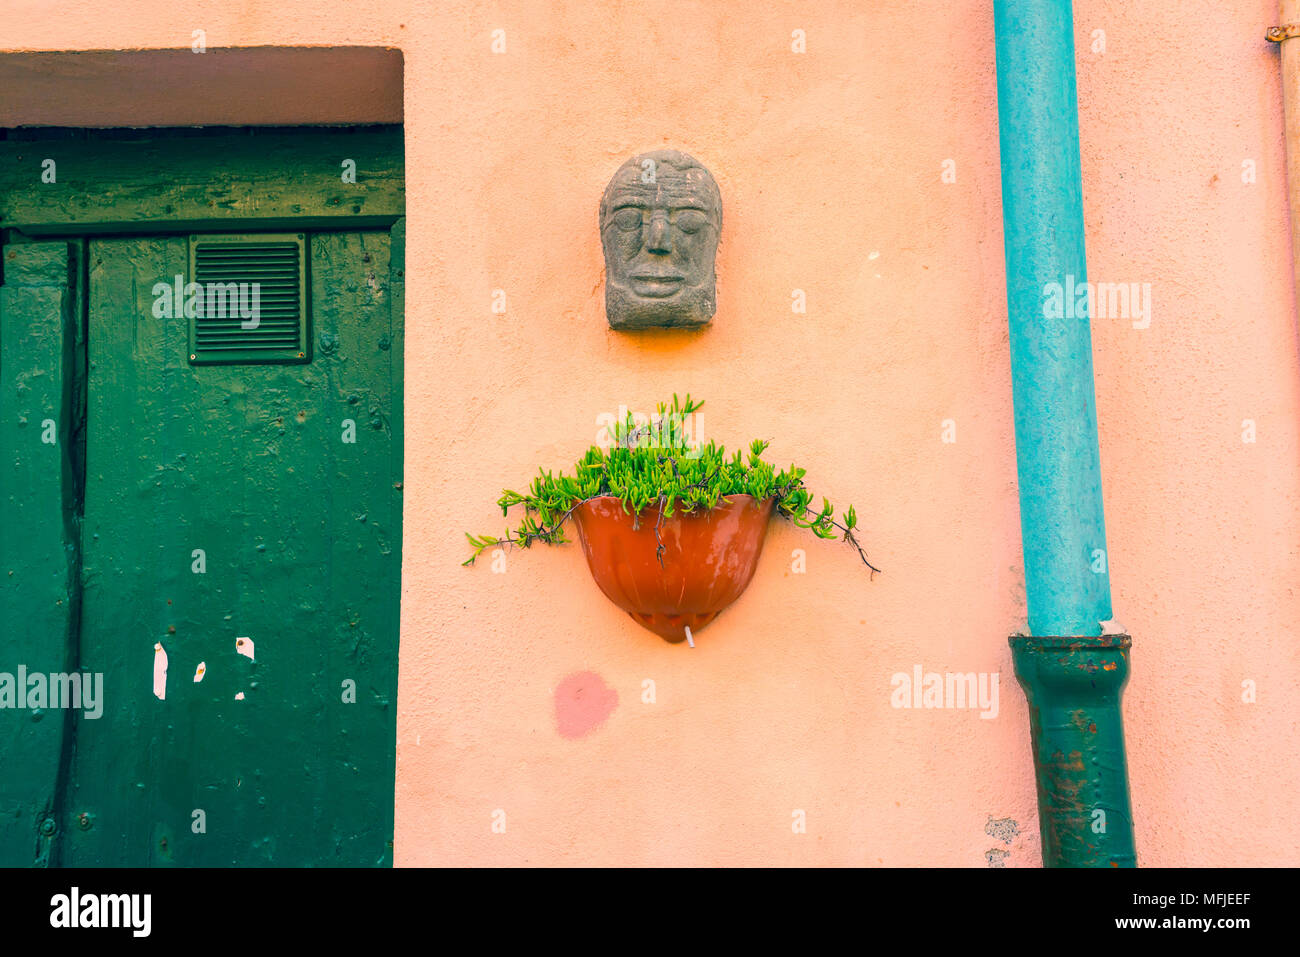 Pflanze im Topf zu einer Rosa pastellfarbenen Wand mit alten grünen Holztür angebracht, hellblau Dachrinne und kleinen Gesicht Skulpturen in Stein. Cinque Terre, ICH Stockfoto